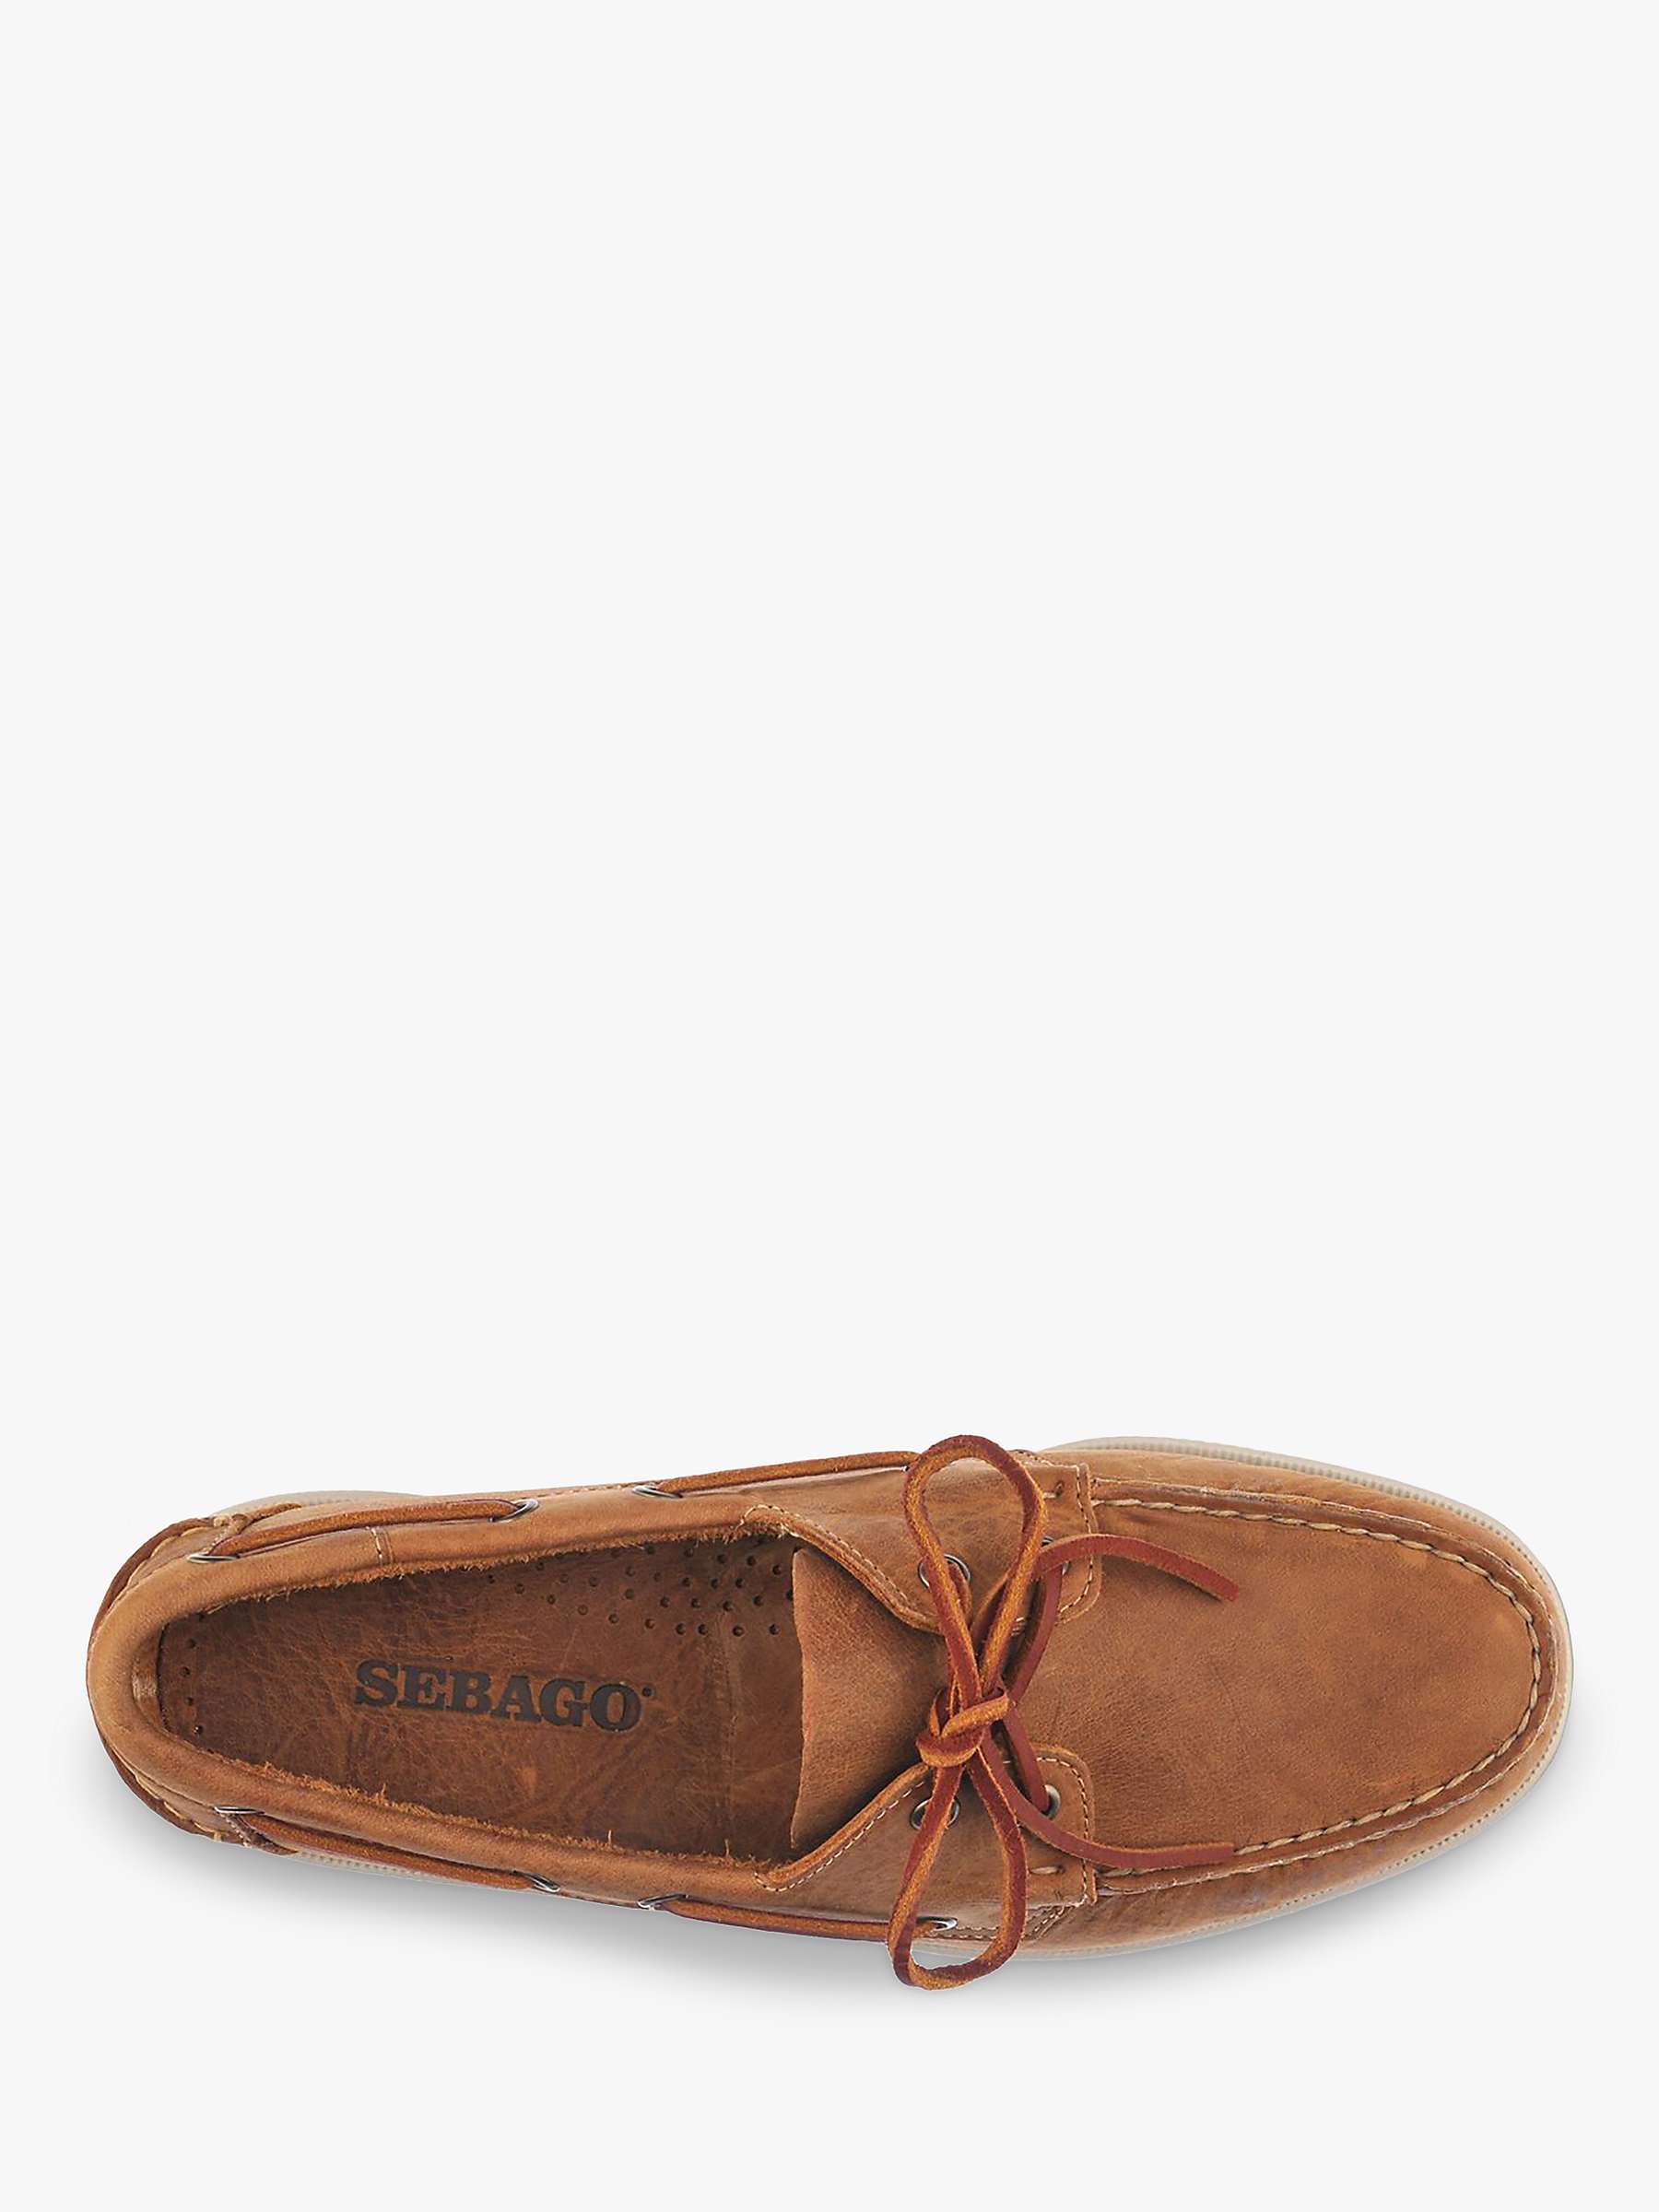 Buy Sebago Dockside Portland Leather Shoes, Brown Tan Online at johnlewis.com